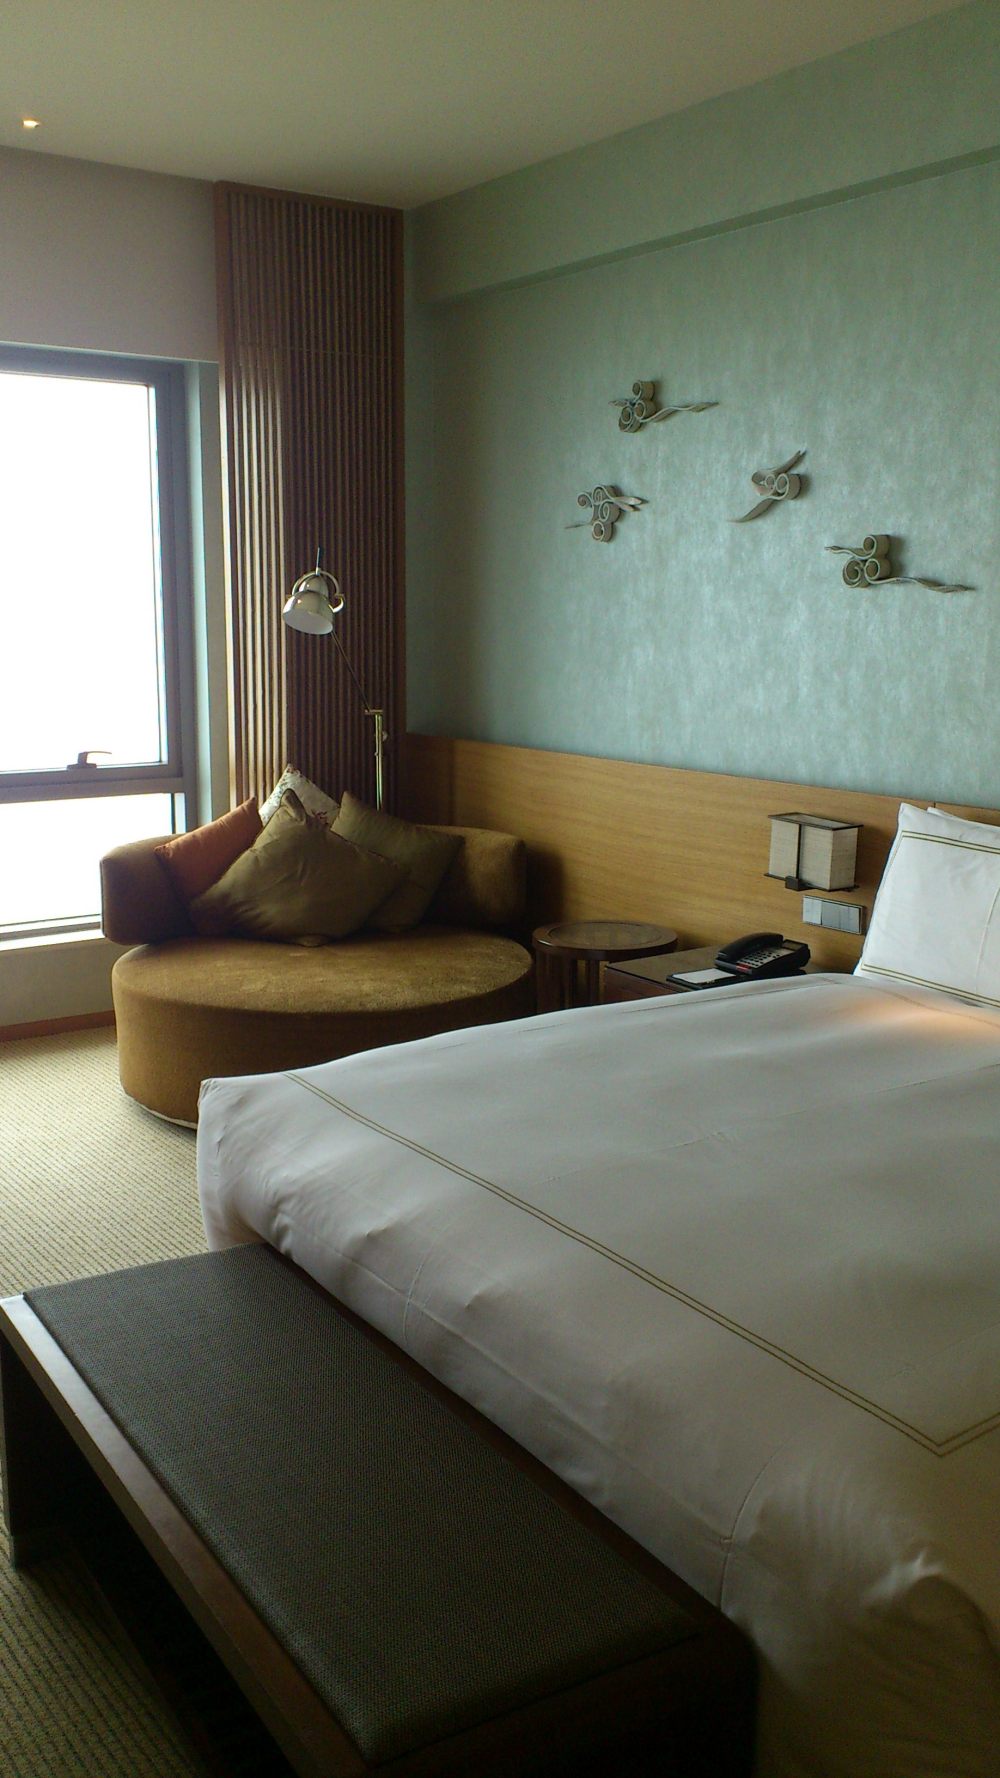 苏州晋合洲际Intercontinental酒店--2012.06.24第八页更新客房_DSC_1298.JPG